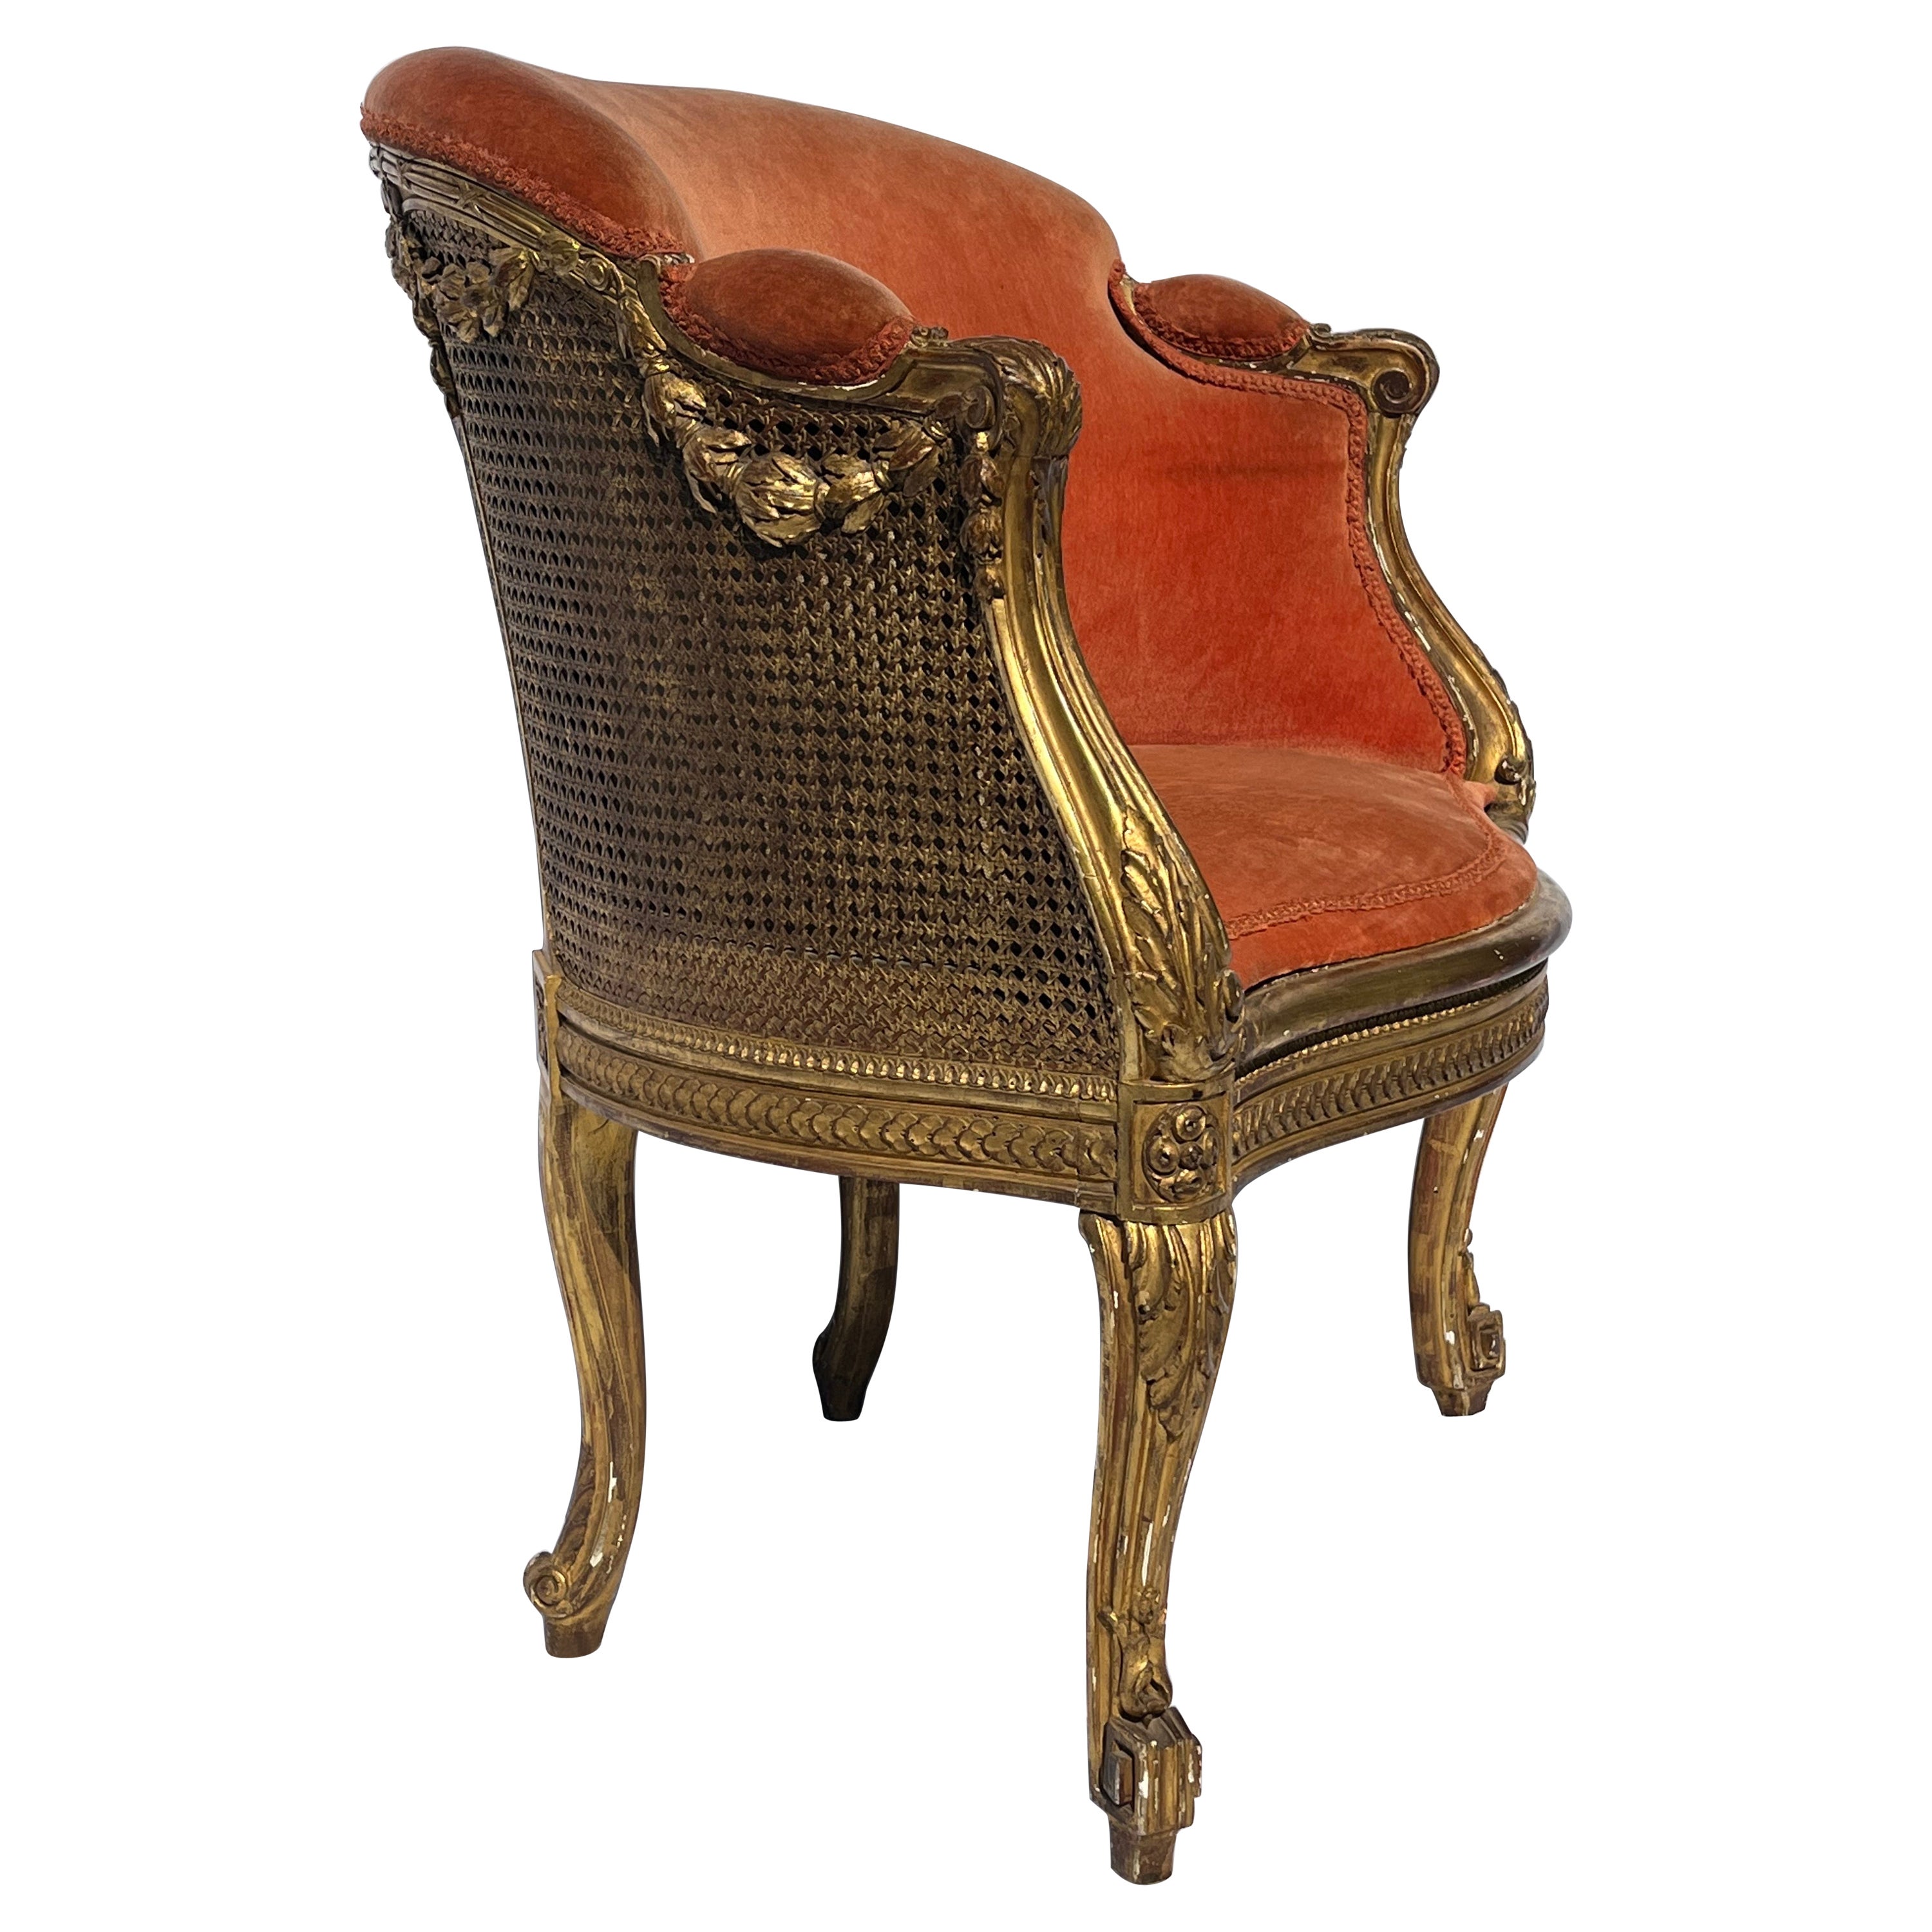 Antiquité française dorée et sculptée 19ème siècle Cane fauteuil Bergere tapissé